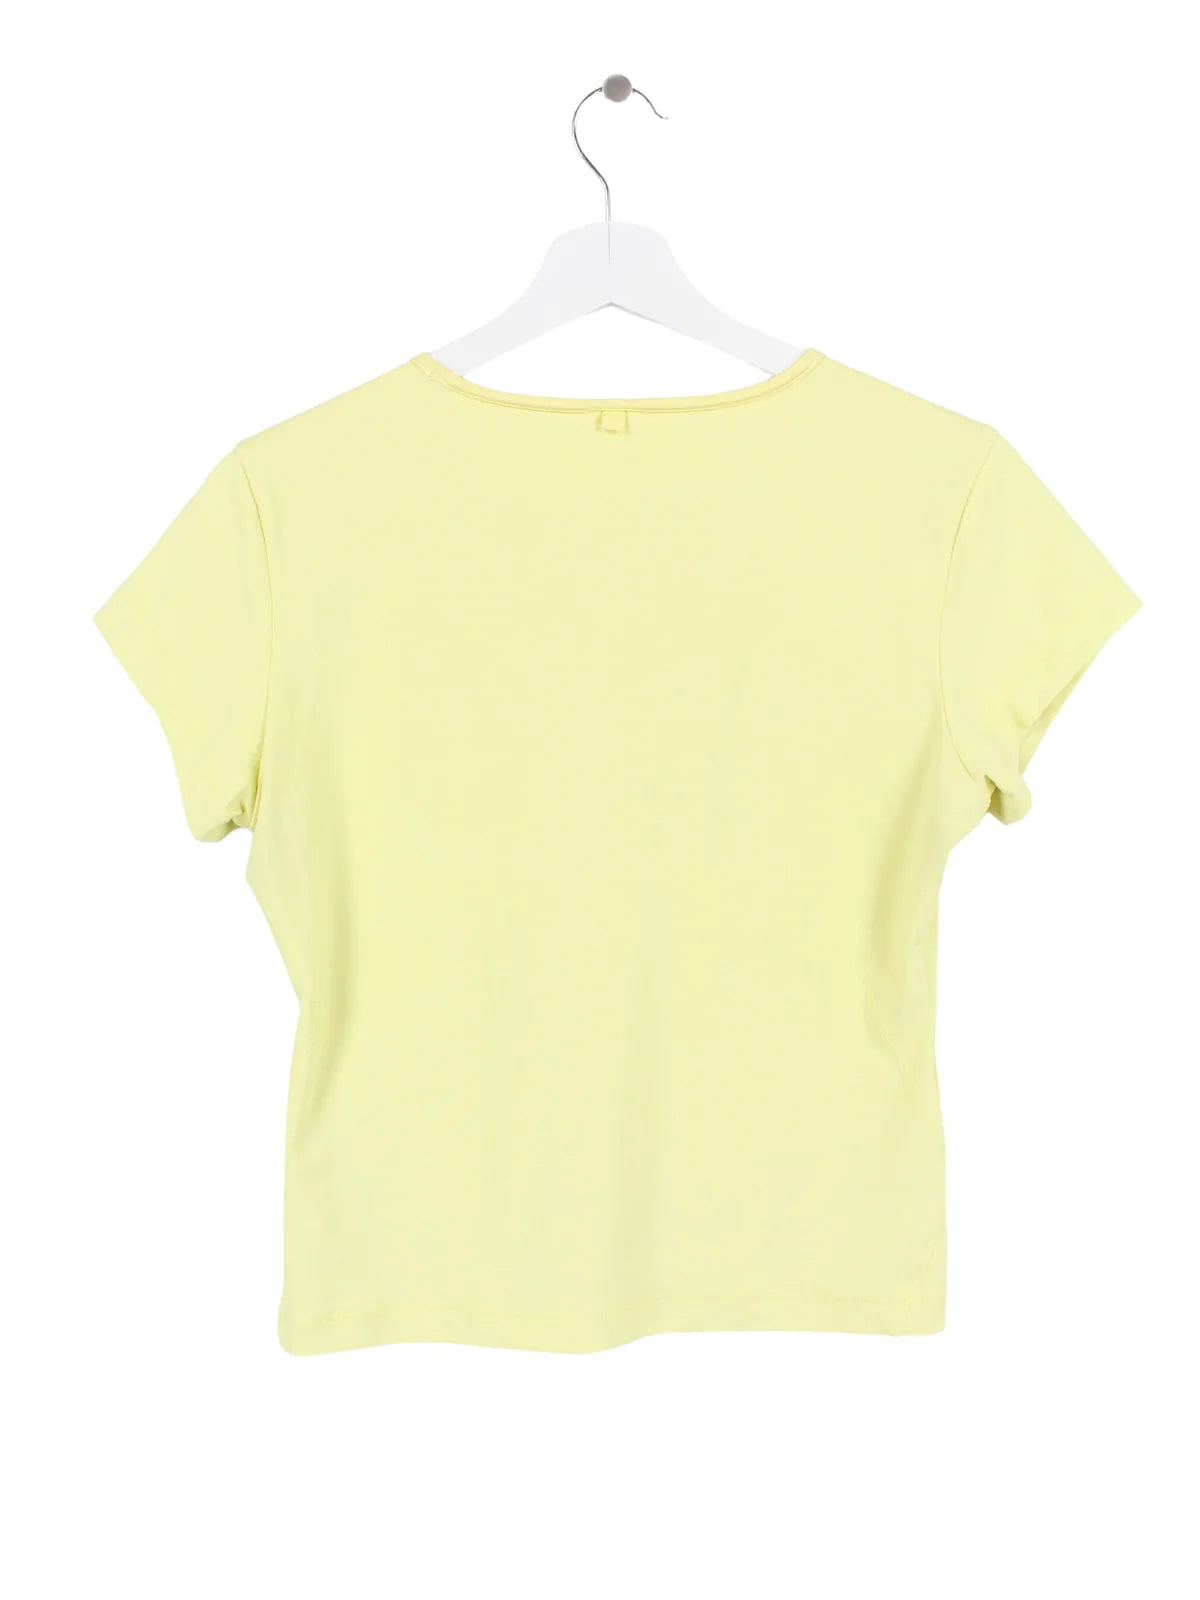 Adidas Damen Sport T-Shirt Gelb S